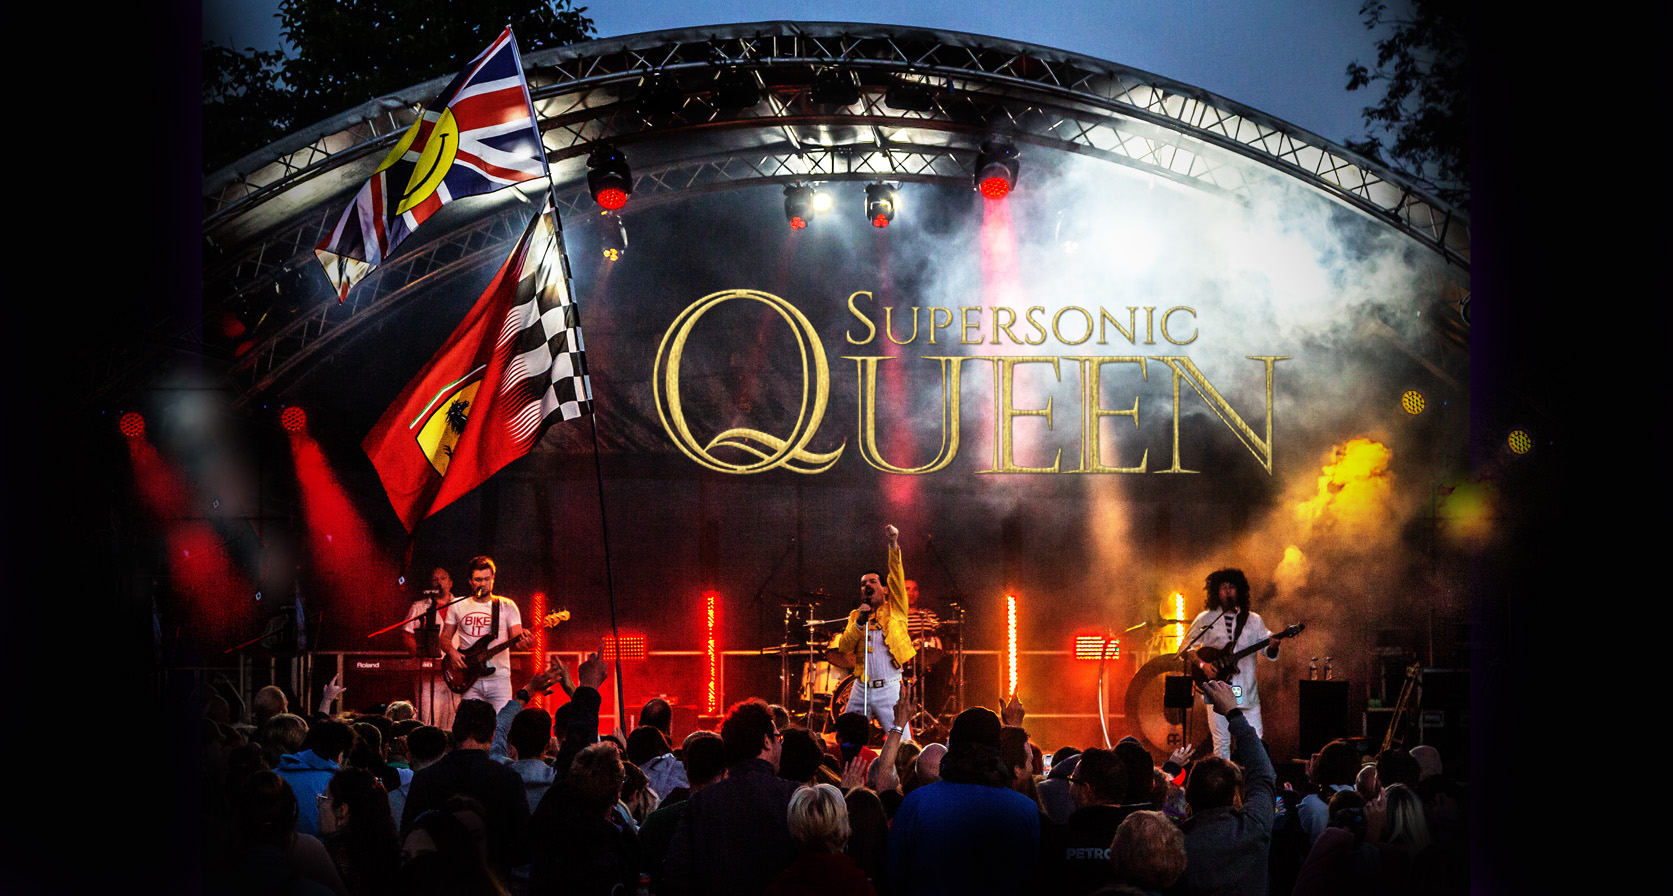 Queen Tribute Band Supersonic Queen 5 Piece Queen Tribute Act